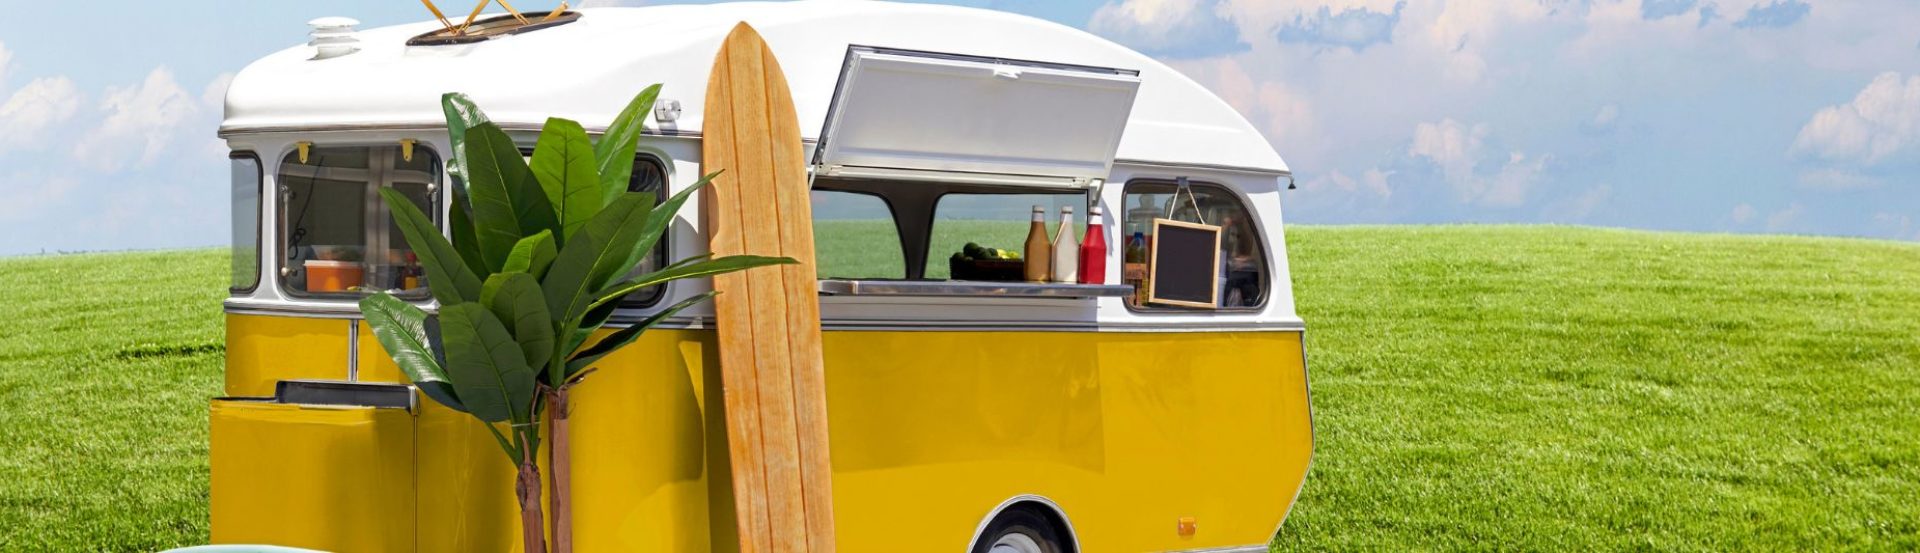 Caravan met surfplank